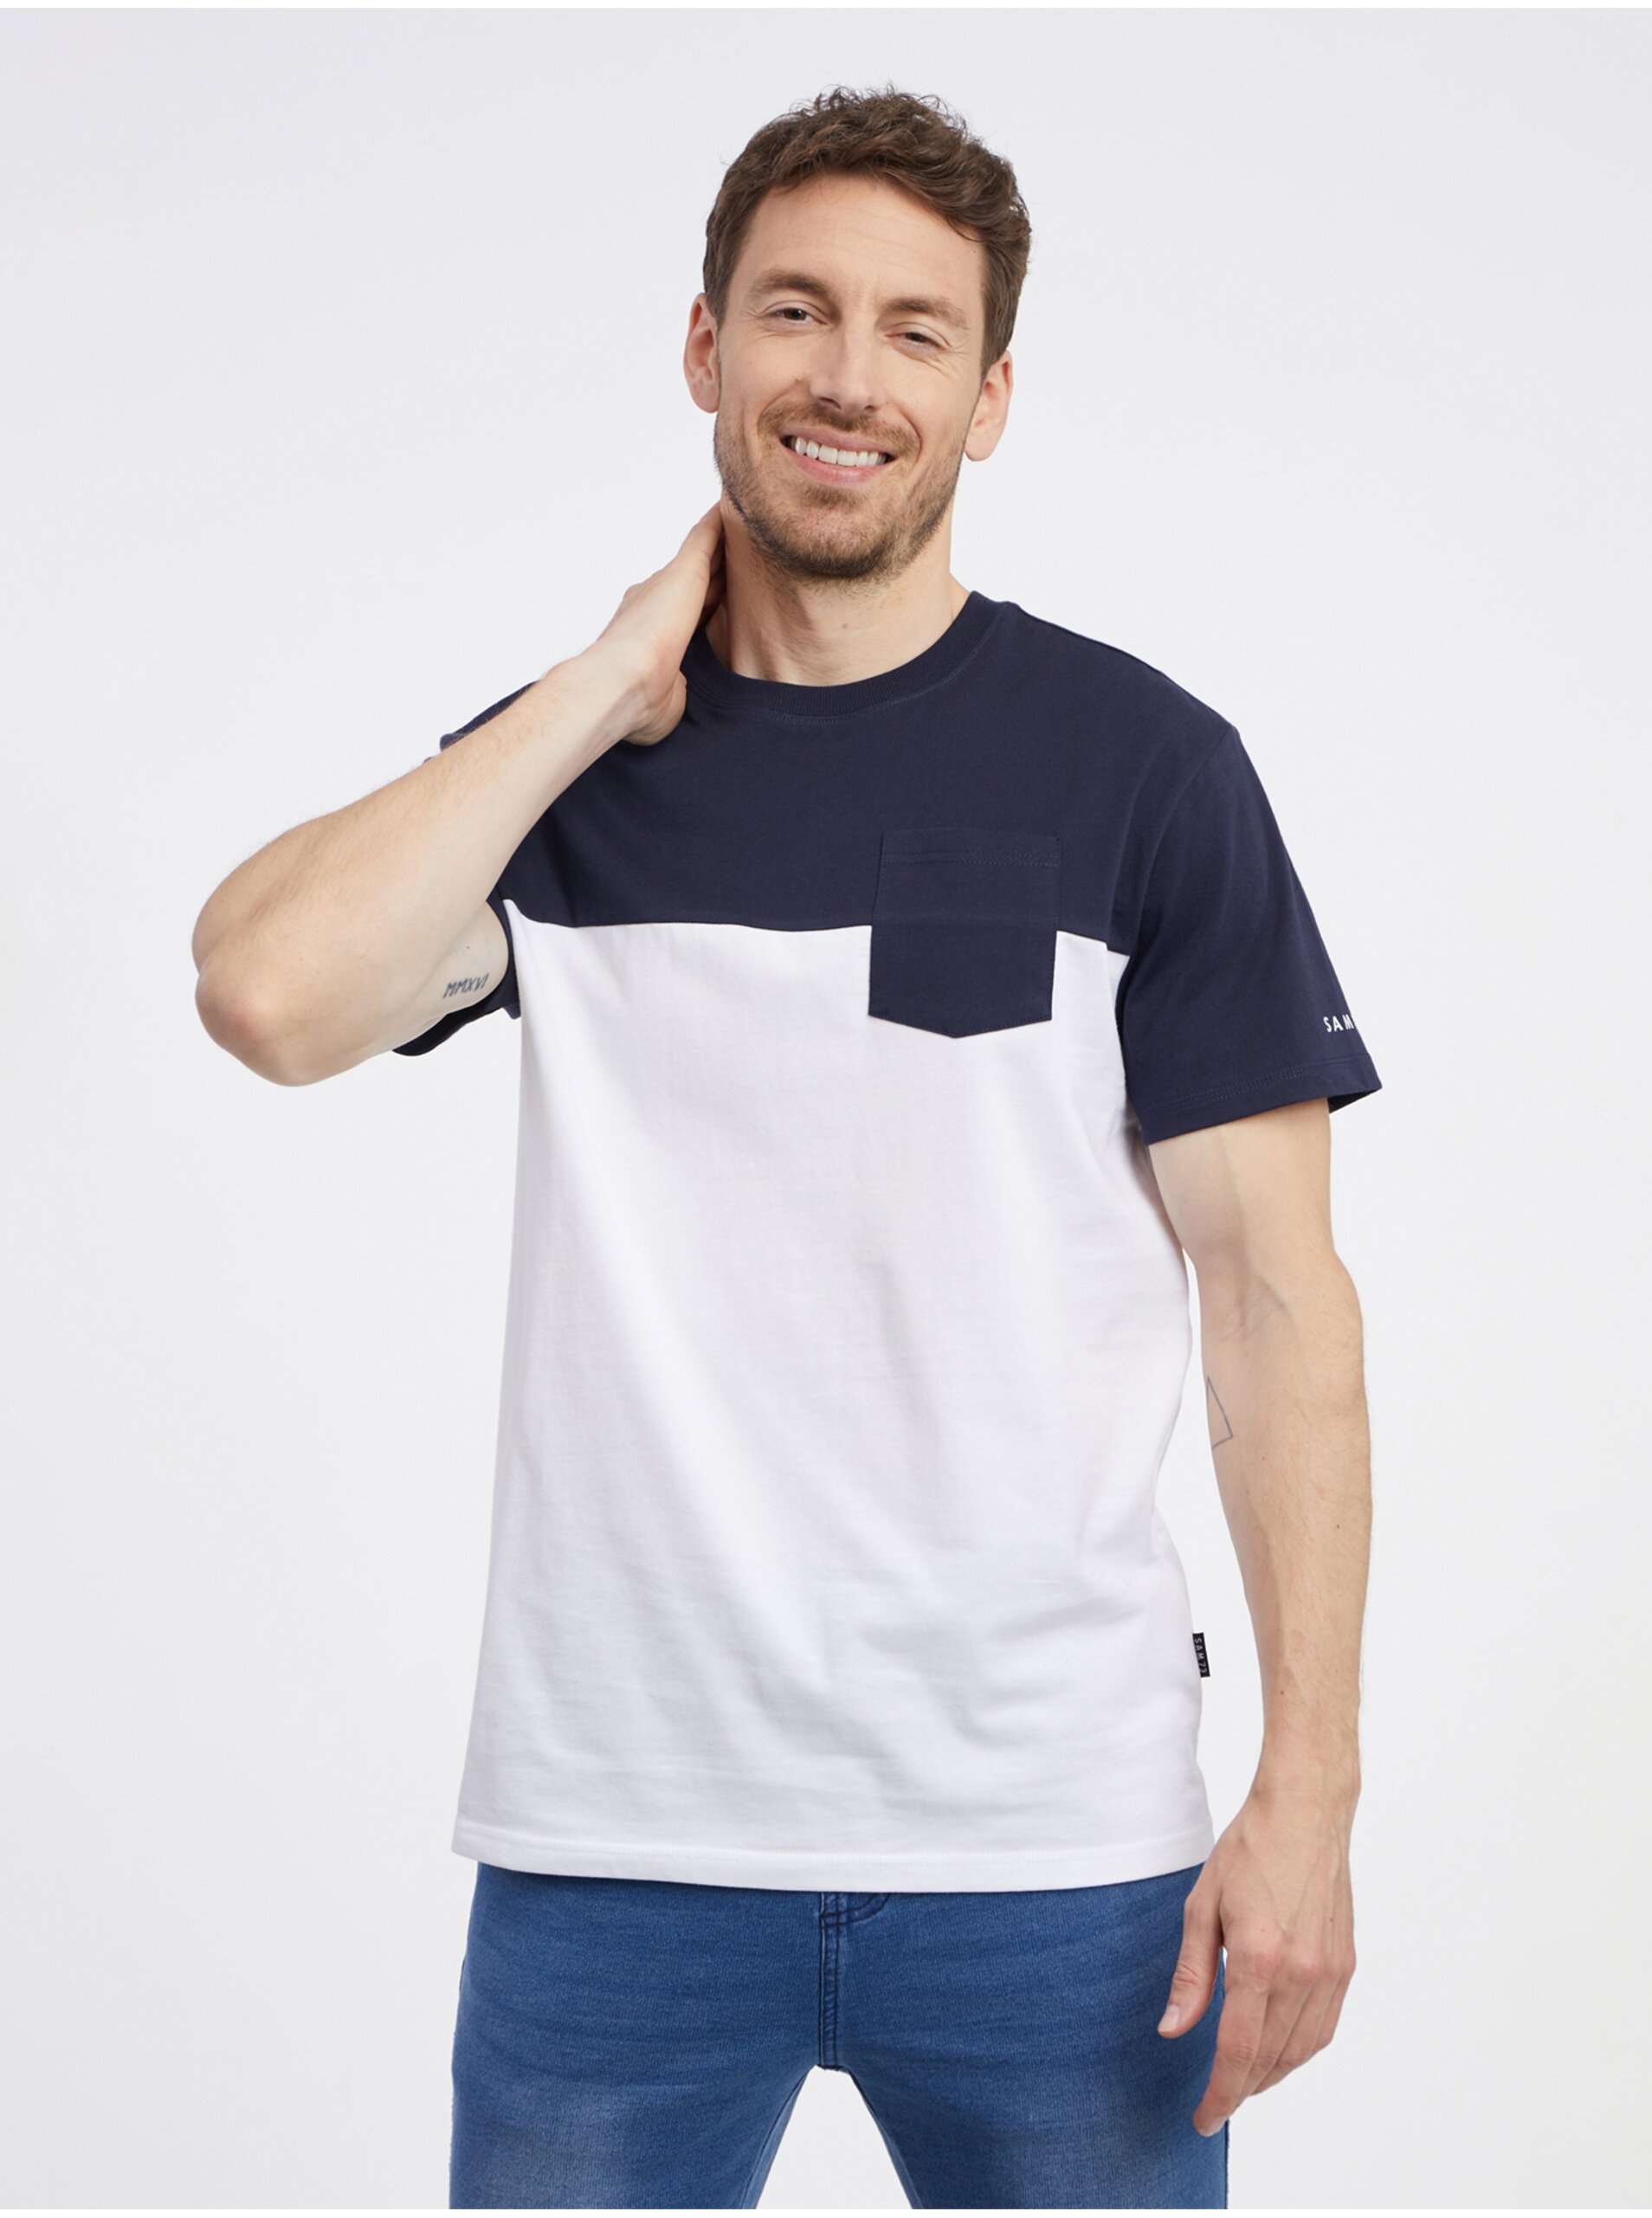 Lacno Modro-biele pánske tričko SAM 73 Sirius